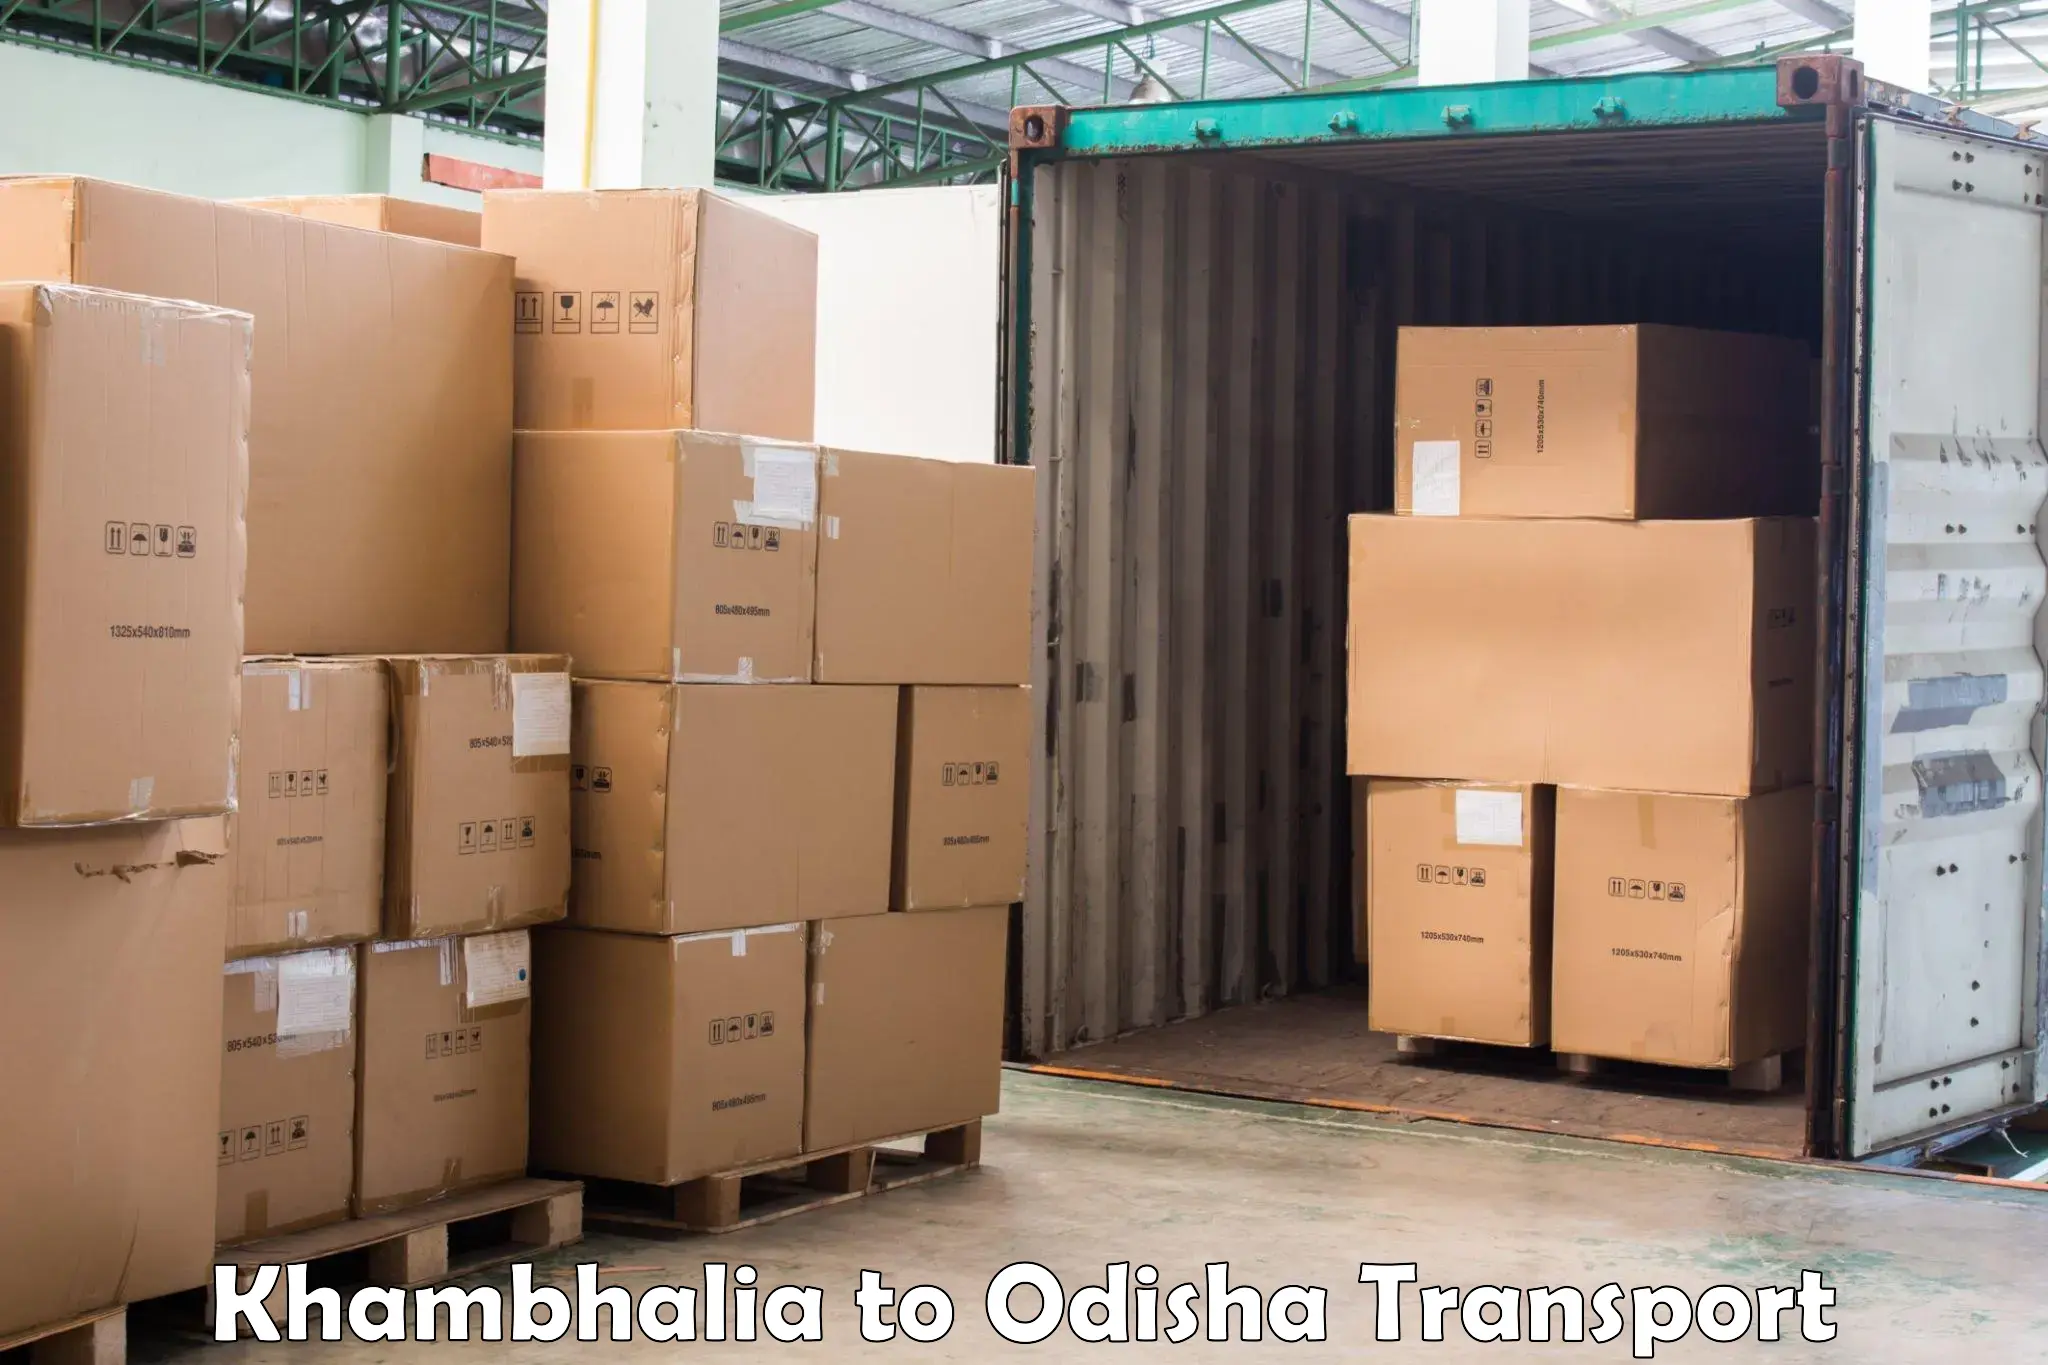 Road transport online services Khambhalia to Mahakalapada